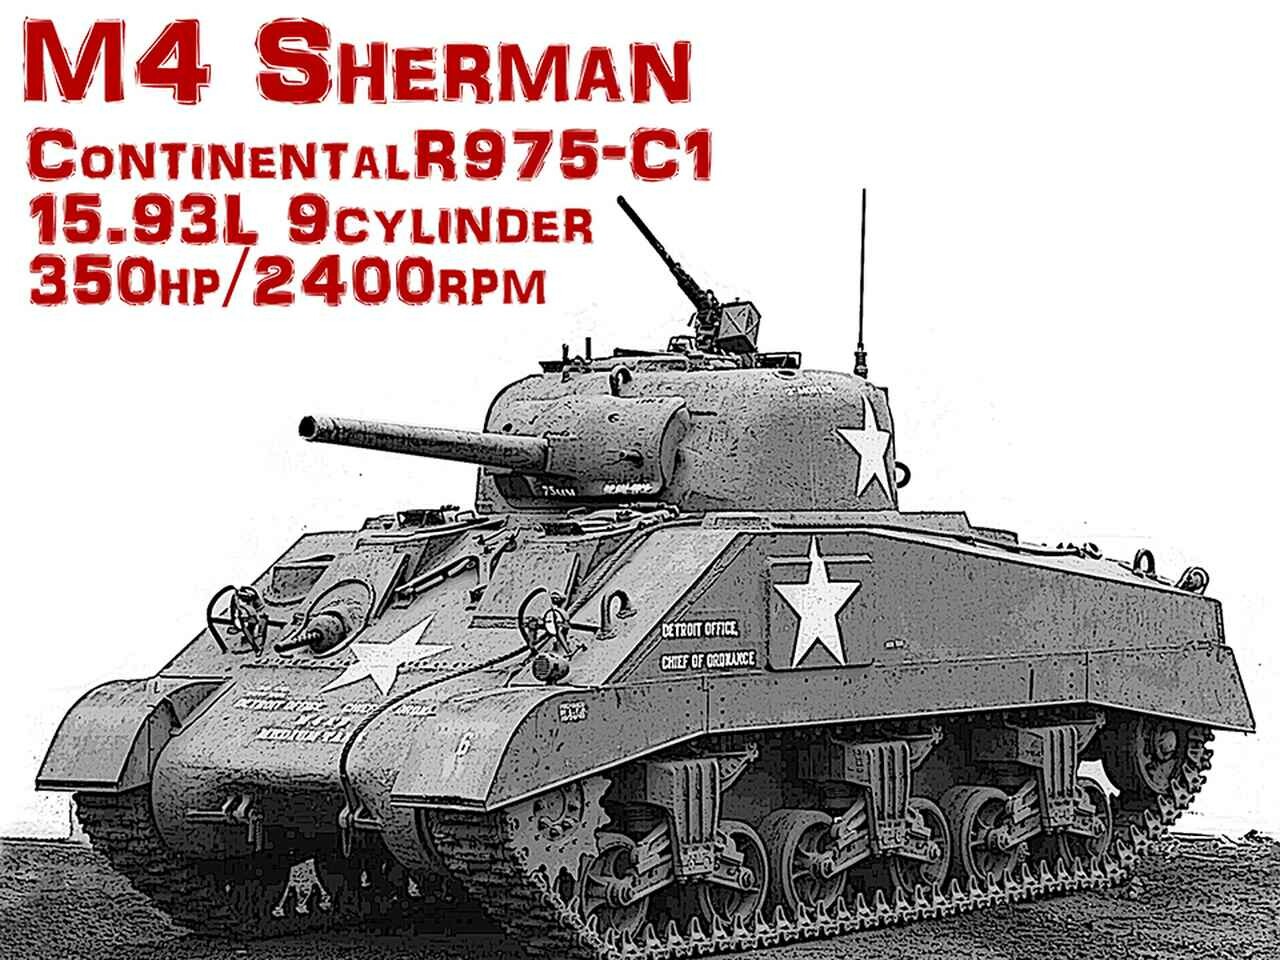 【モンスターマシンに昂ぶる 025】地上に降りた星型エンジンを搭載したM4 シャーマン戦車